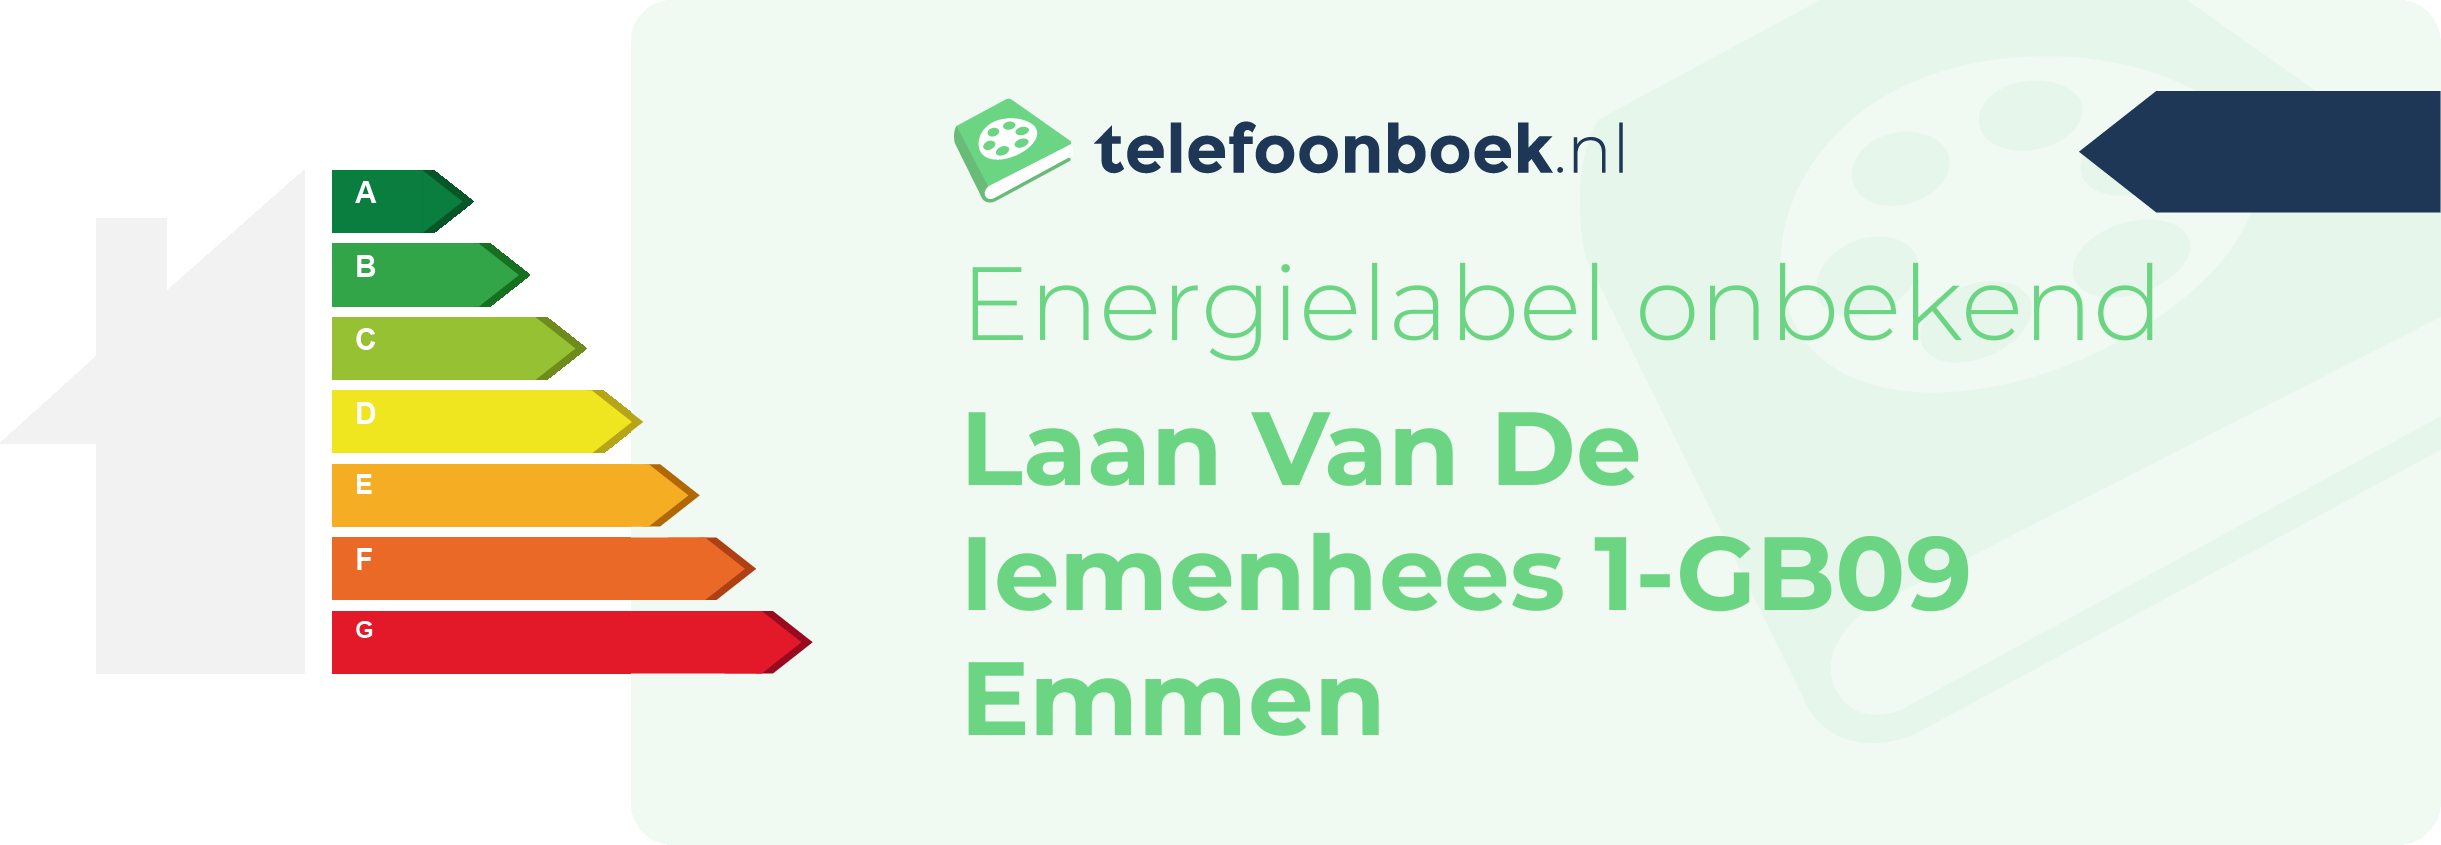 Energielabel Laan Van De Iemenhees 1-GB09 Emmen